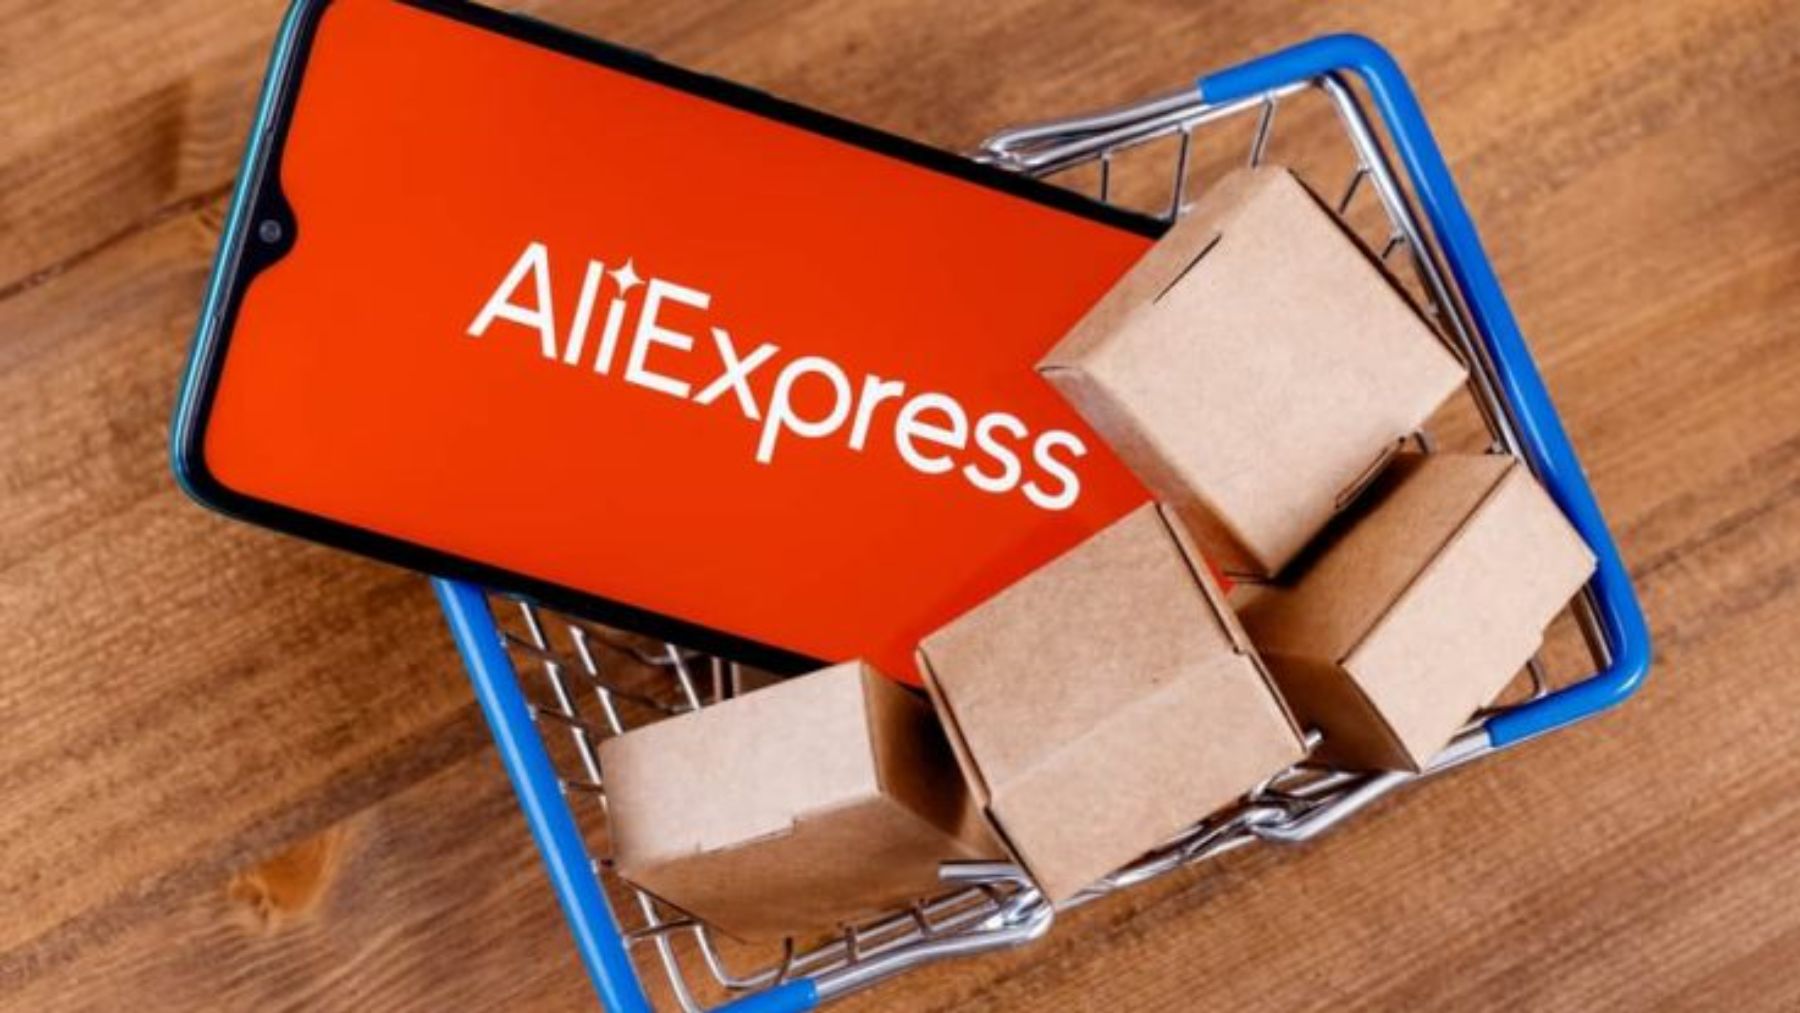 AliExpress estrena nuevo plazo de entrega en España